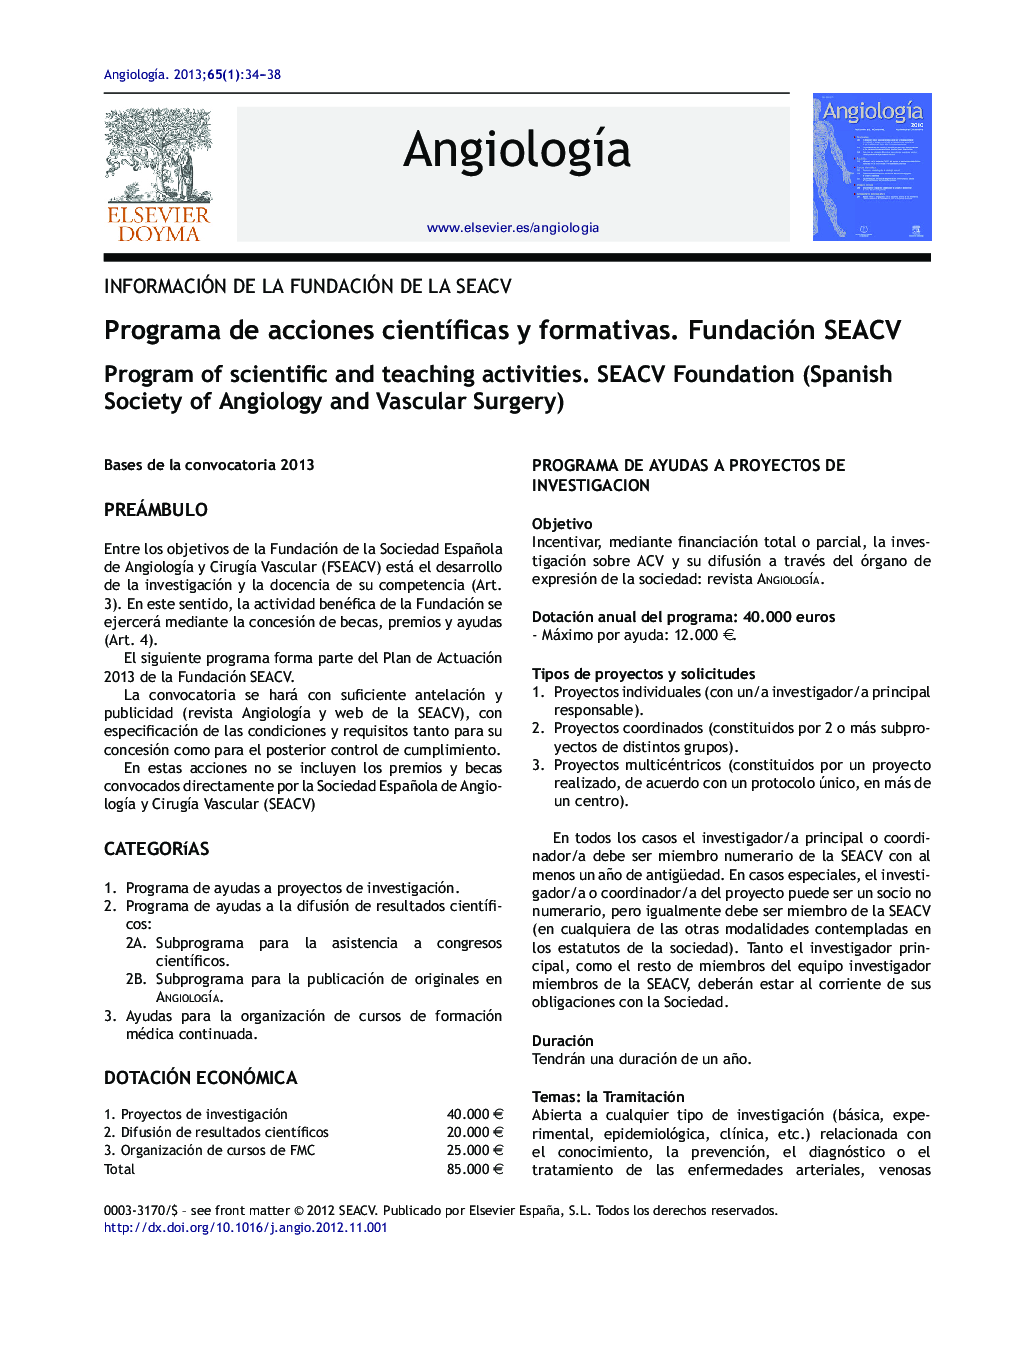 Programa de acciones cientÃ­ficas y formativas. Fundación SEACV